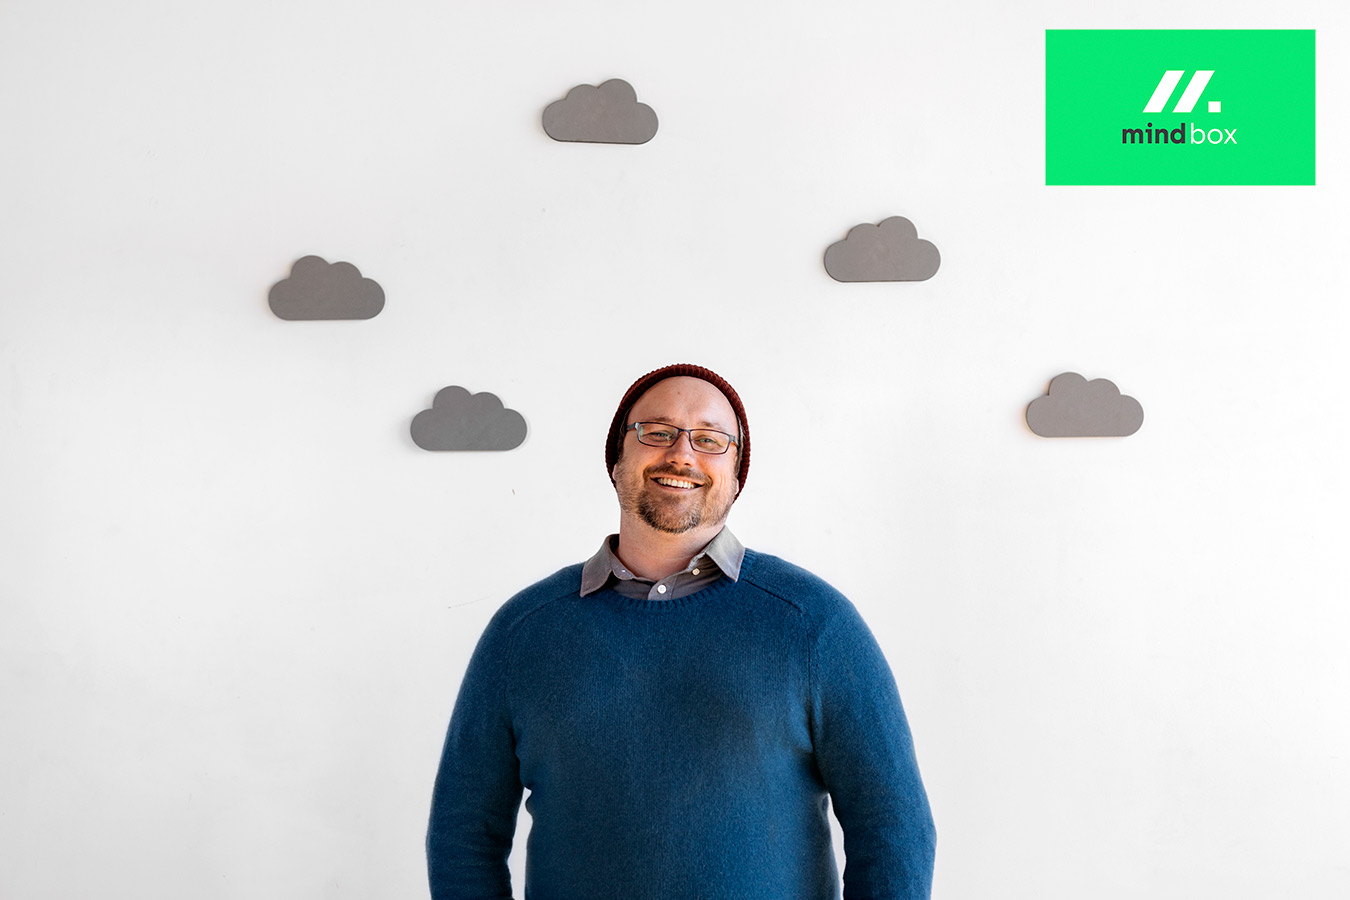 cloud native ми допомагаємо таким компаніям, як ваша, досягти успіху в епоху хмар